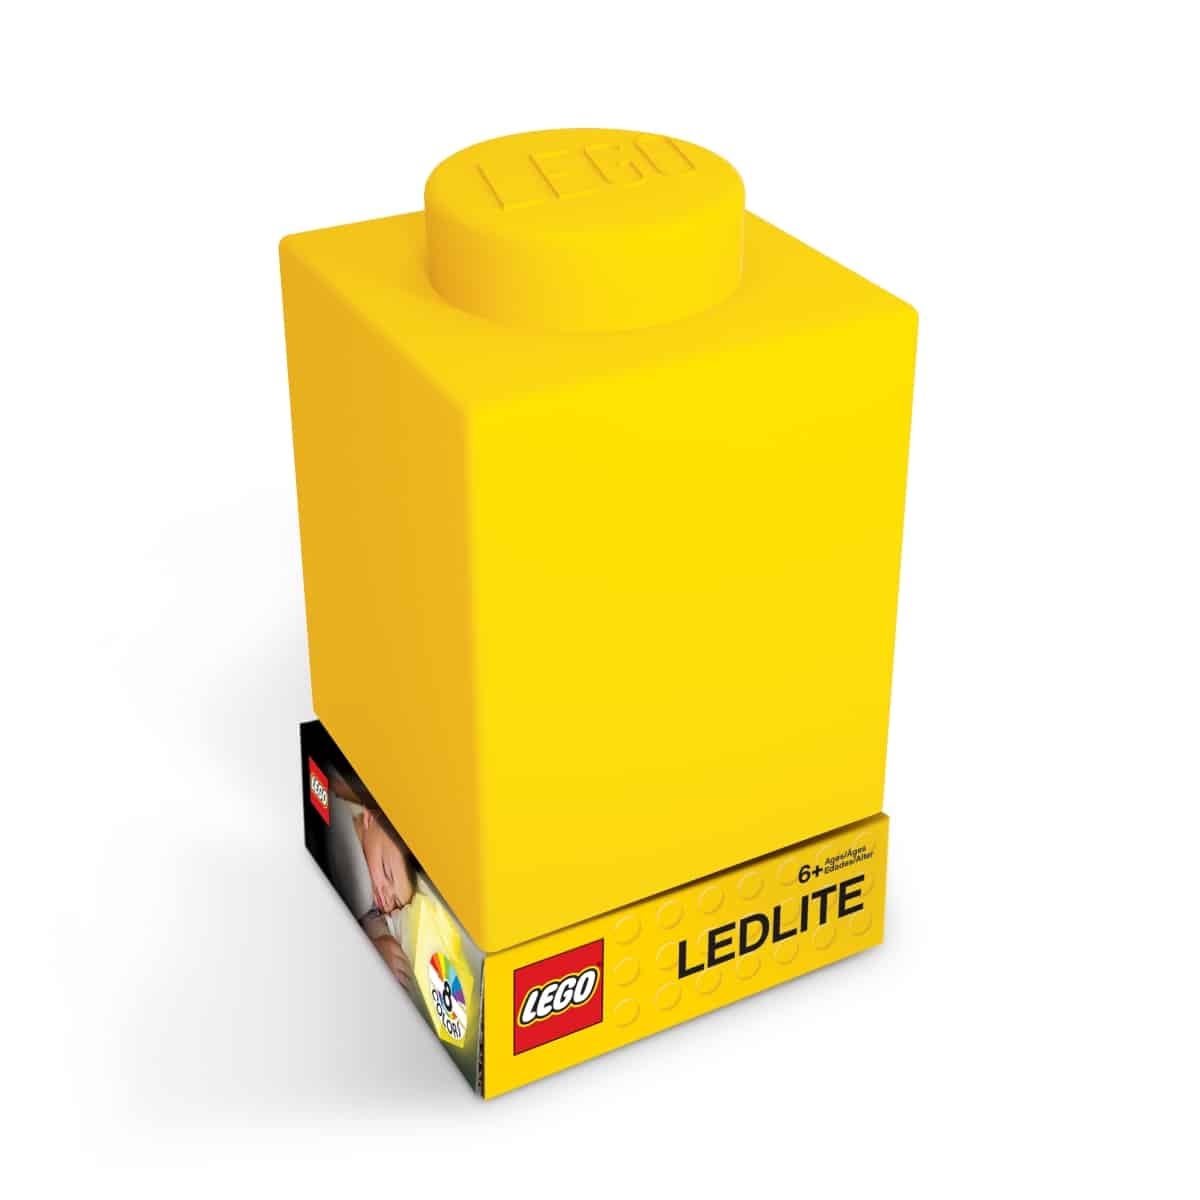 Lego 5007234 1X1 Nachtlampje Geel